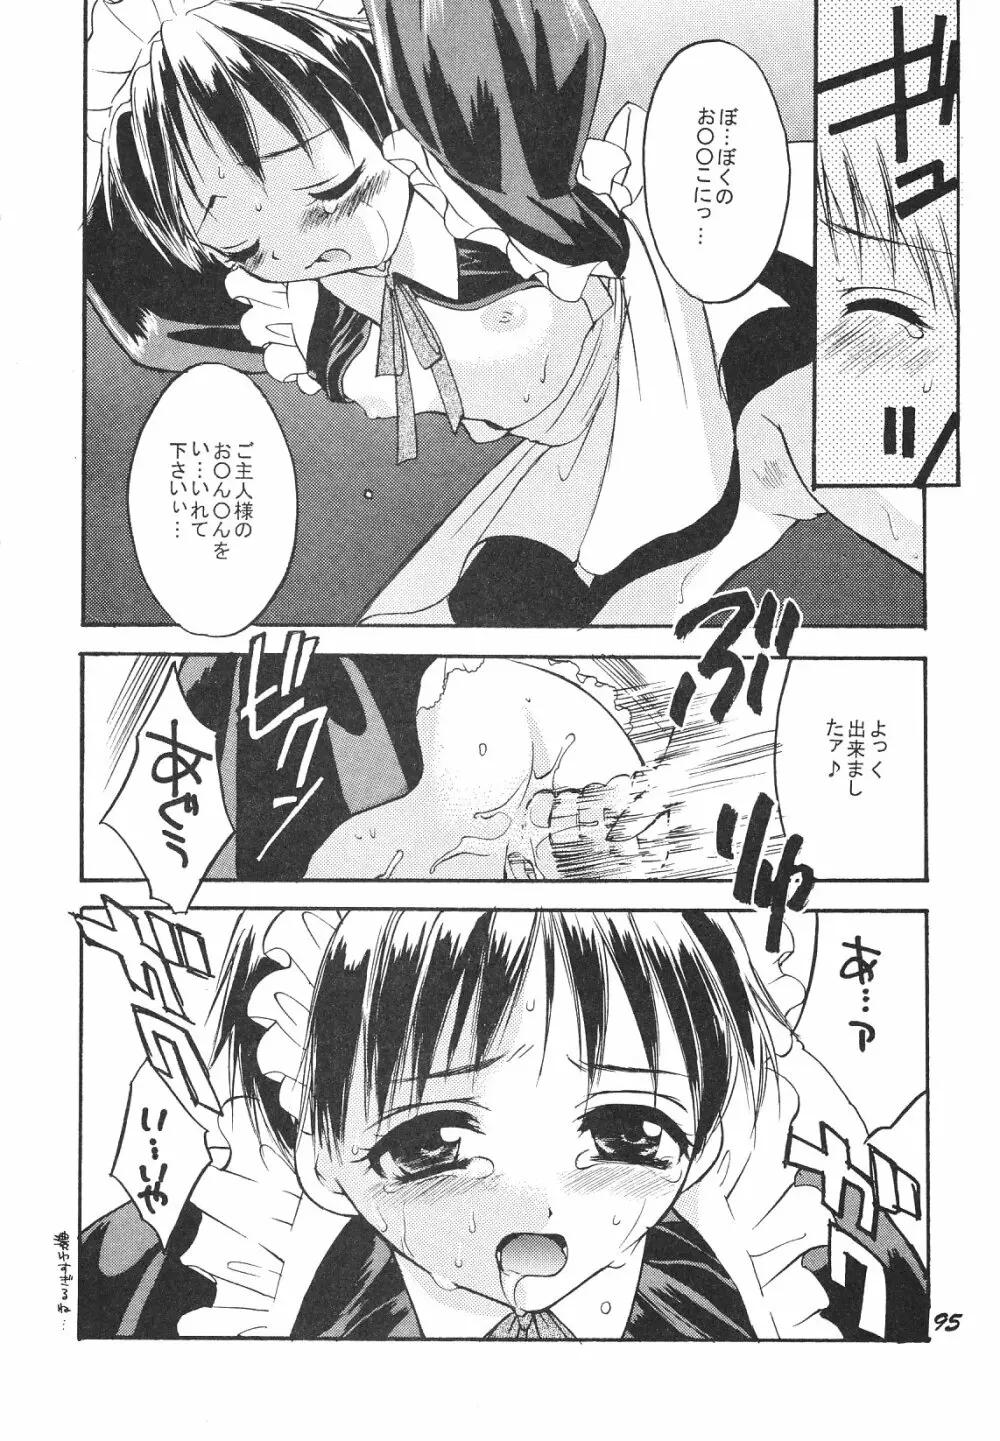 Maniac Juice 女シンジ再録集 '96-'99 - page95